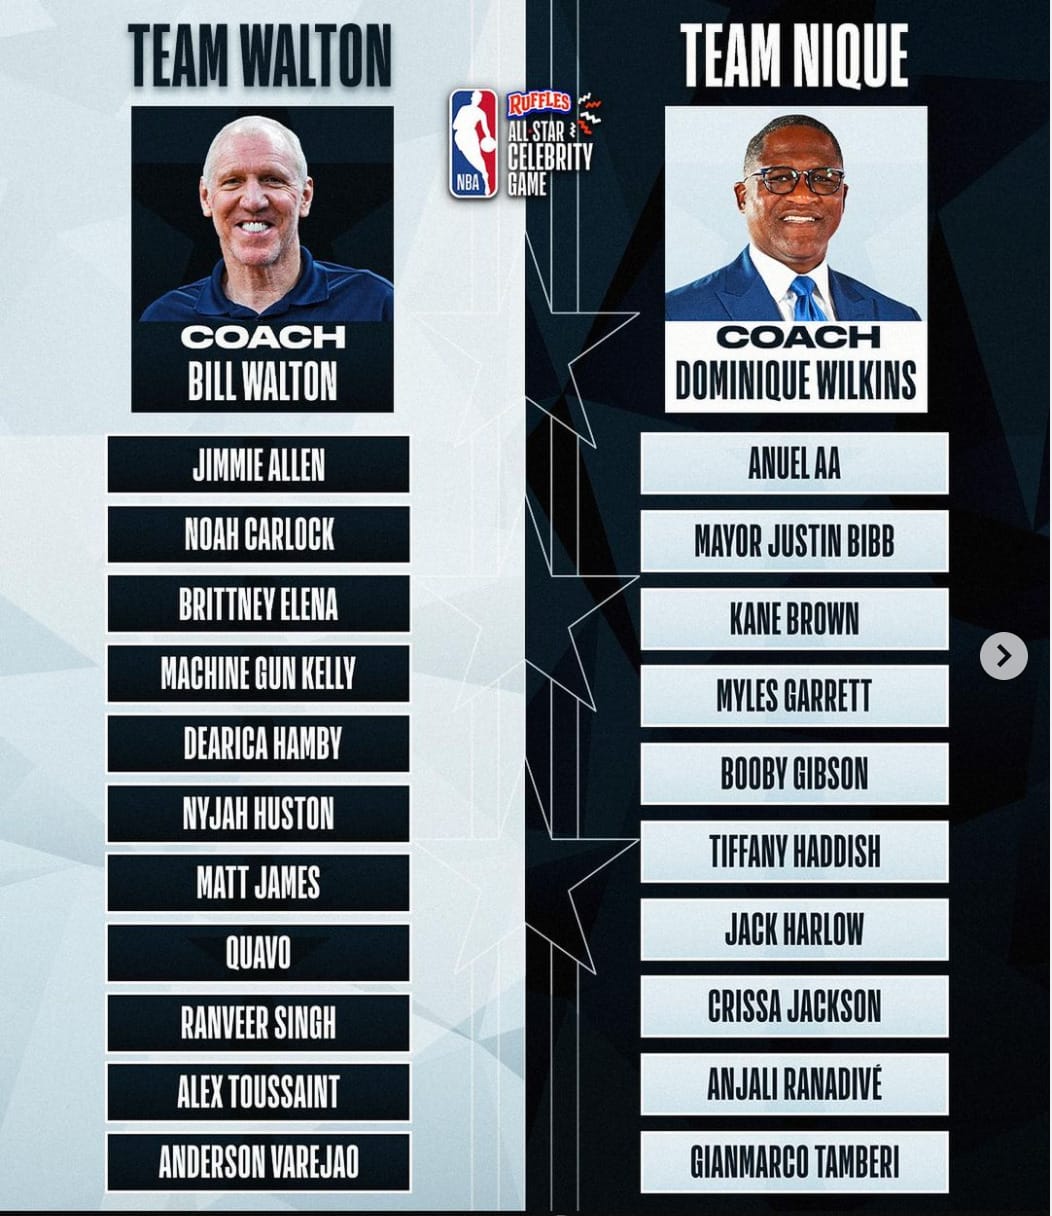 2022 NBA All Star Celebrity Game Line-Up. Image credit NBA Instagram.